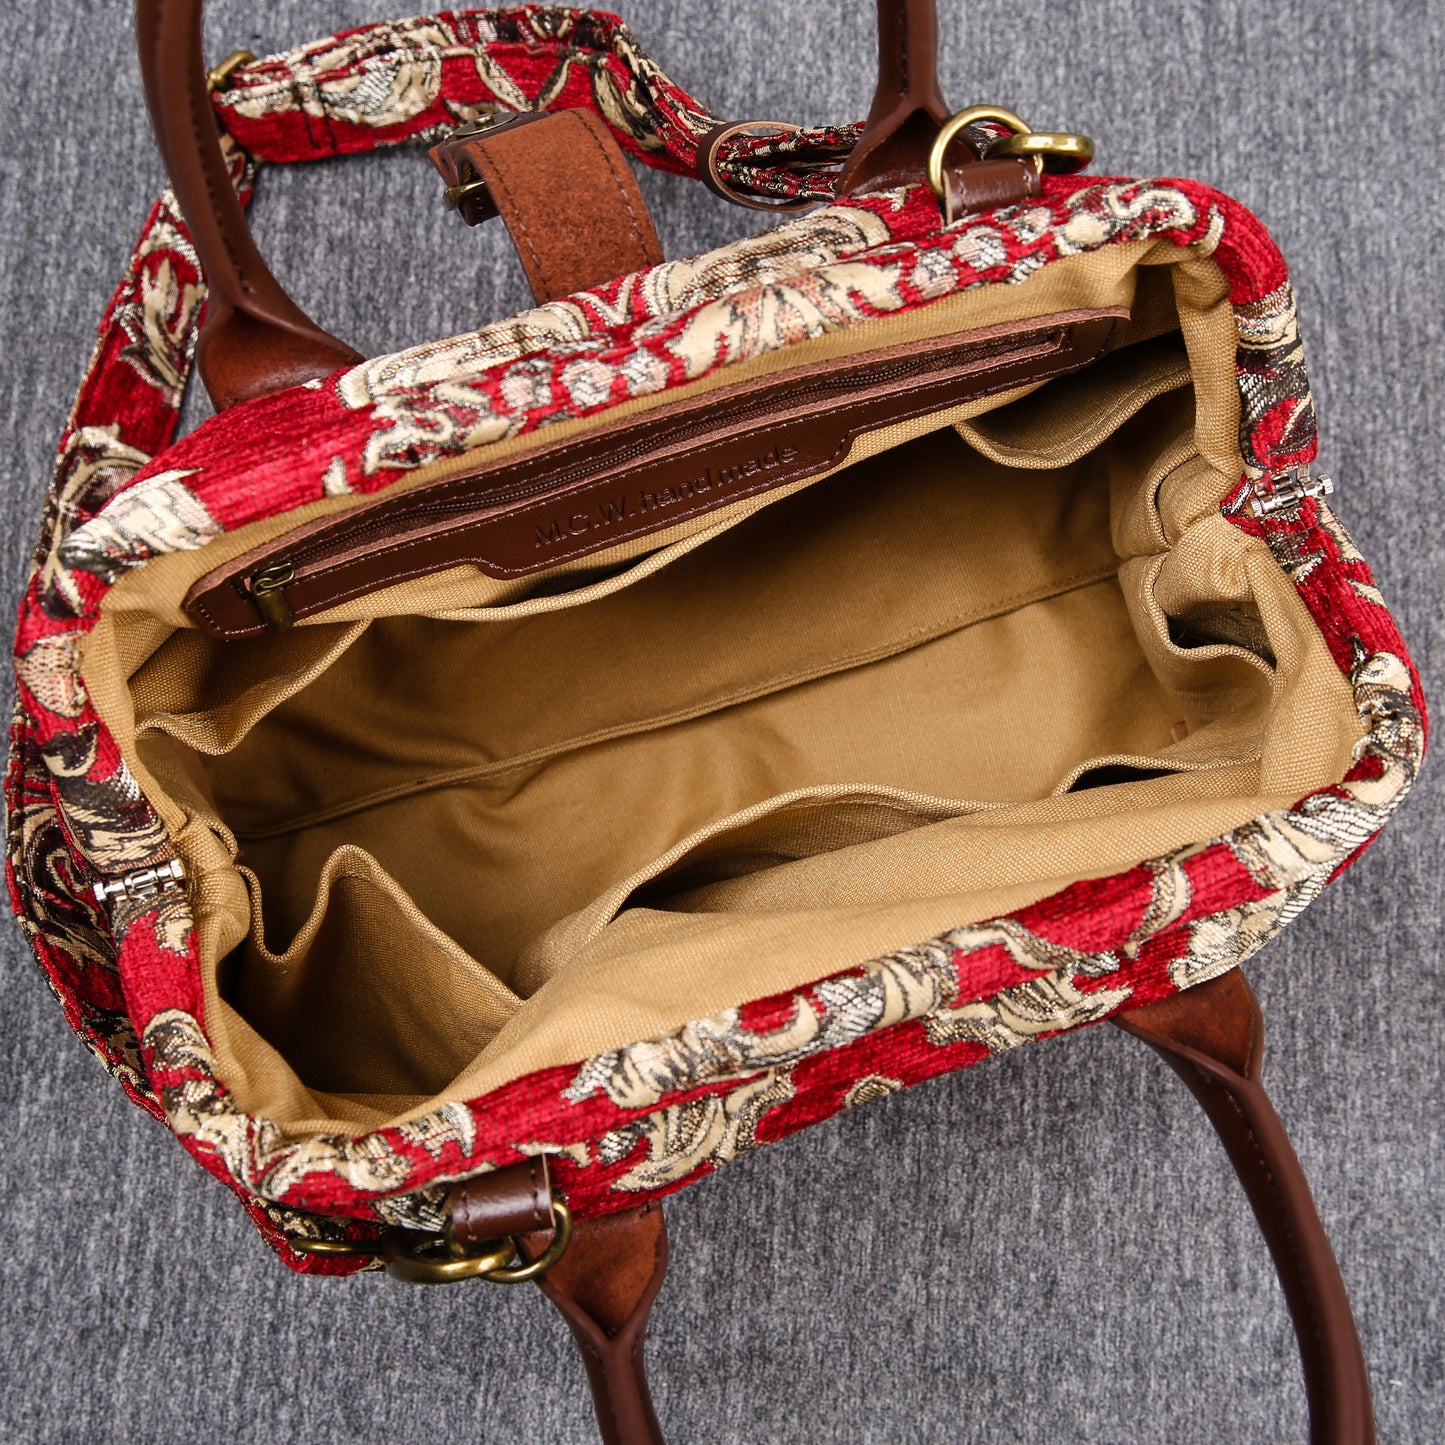 Carpet Handbag Victorian Blossom Red/Gold